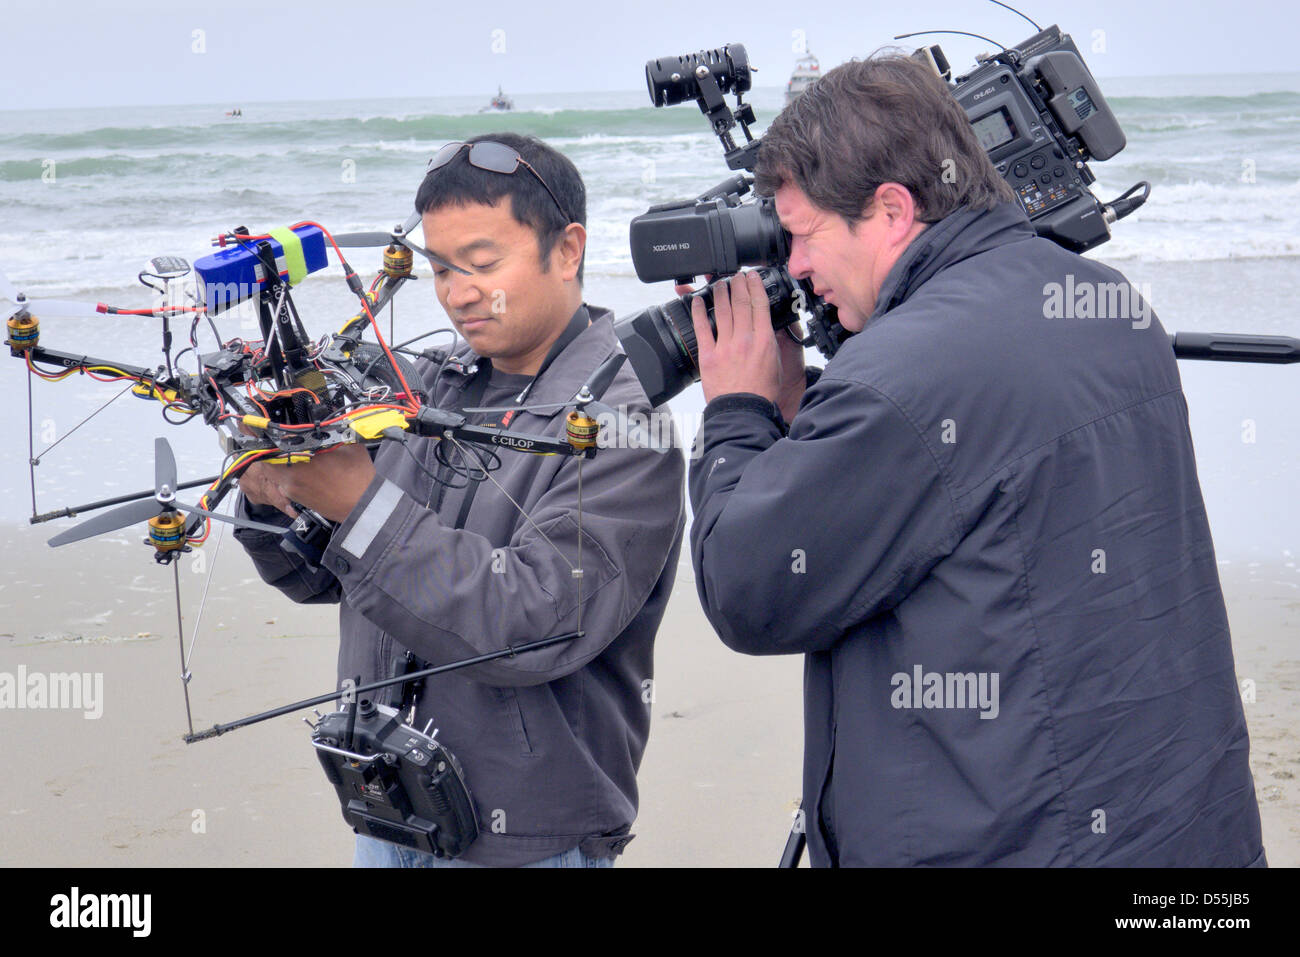 Un homme témoigne de son drone caméra à distance de vol Banque D'Images